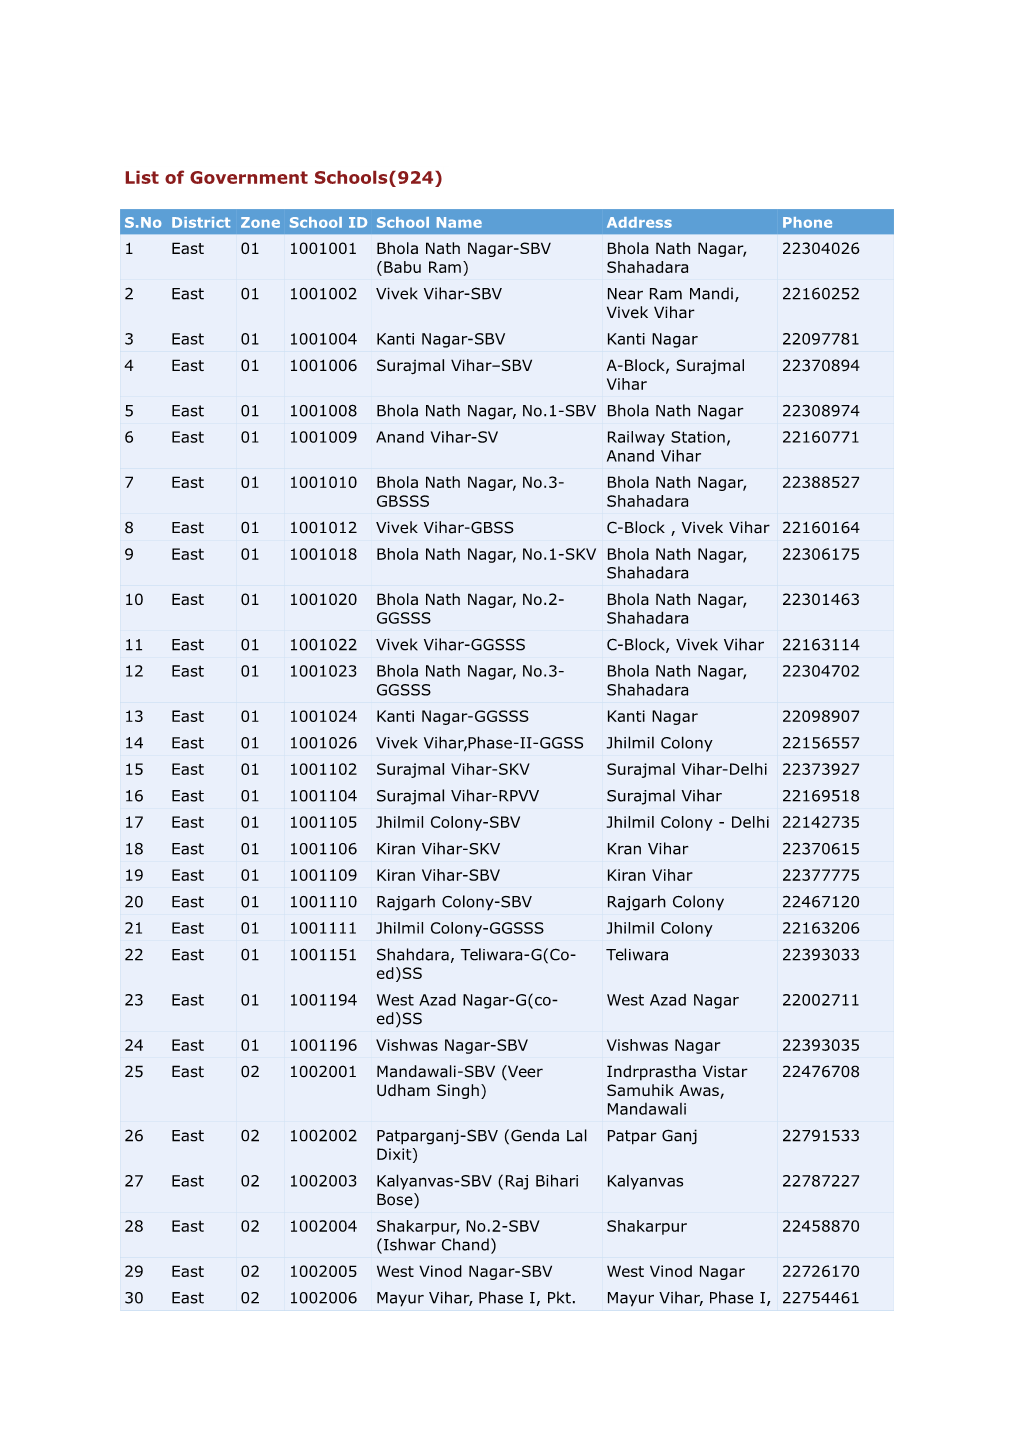 List of Govt School